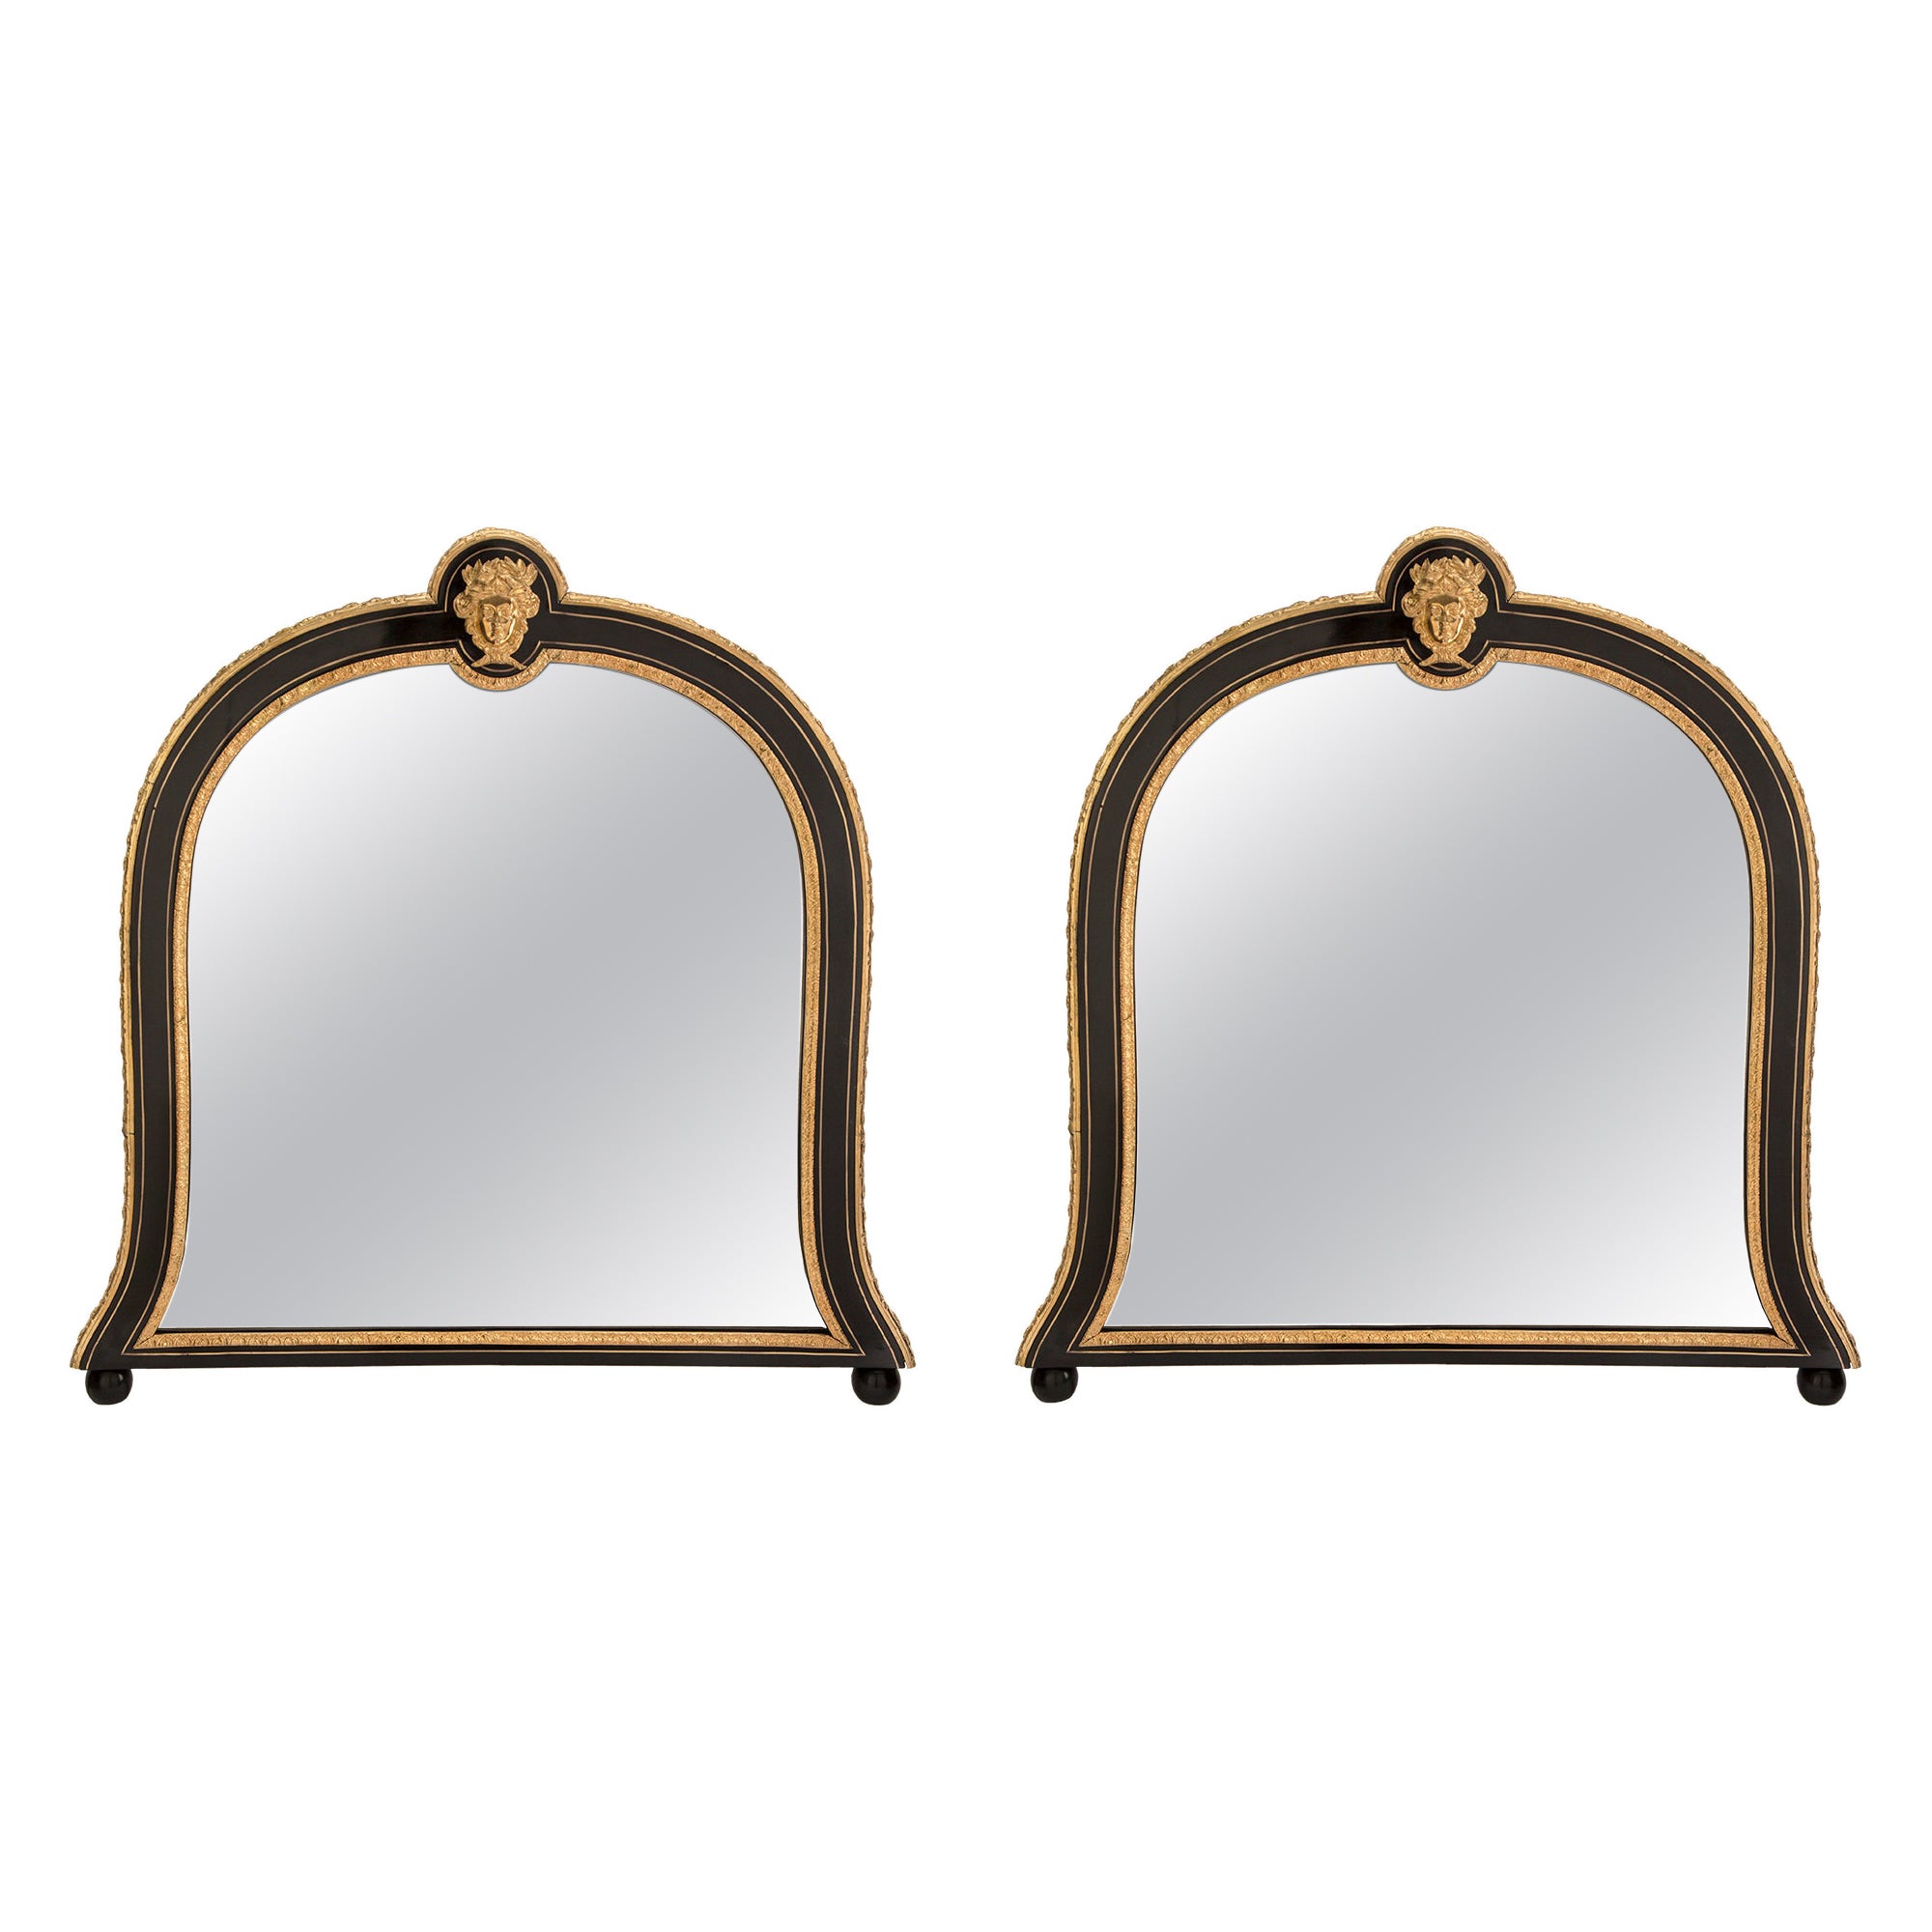 Paar französische Spiegel aus der Zeit Napoleons III. und Ludwigs XIV. aus dem 19. Jahrhundert